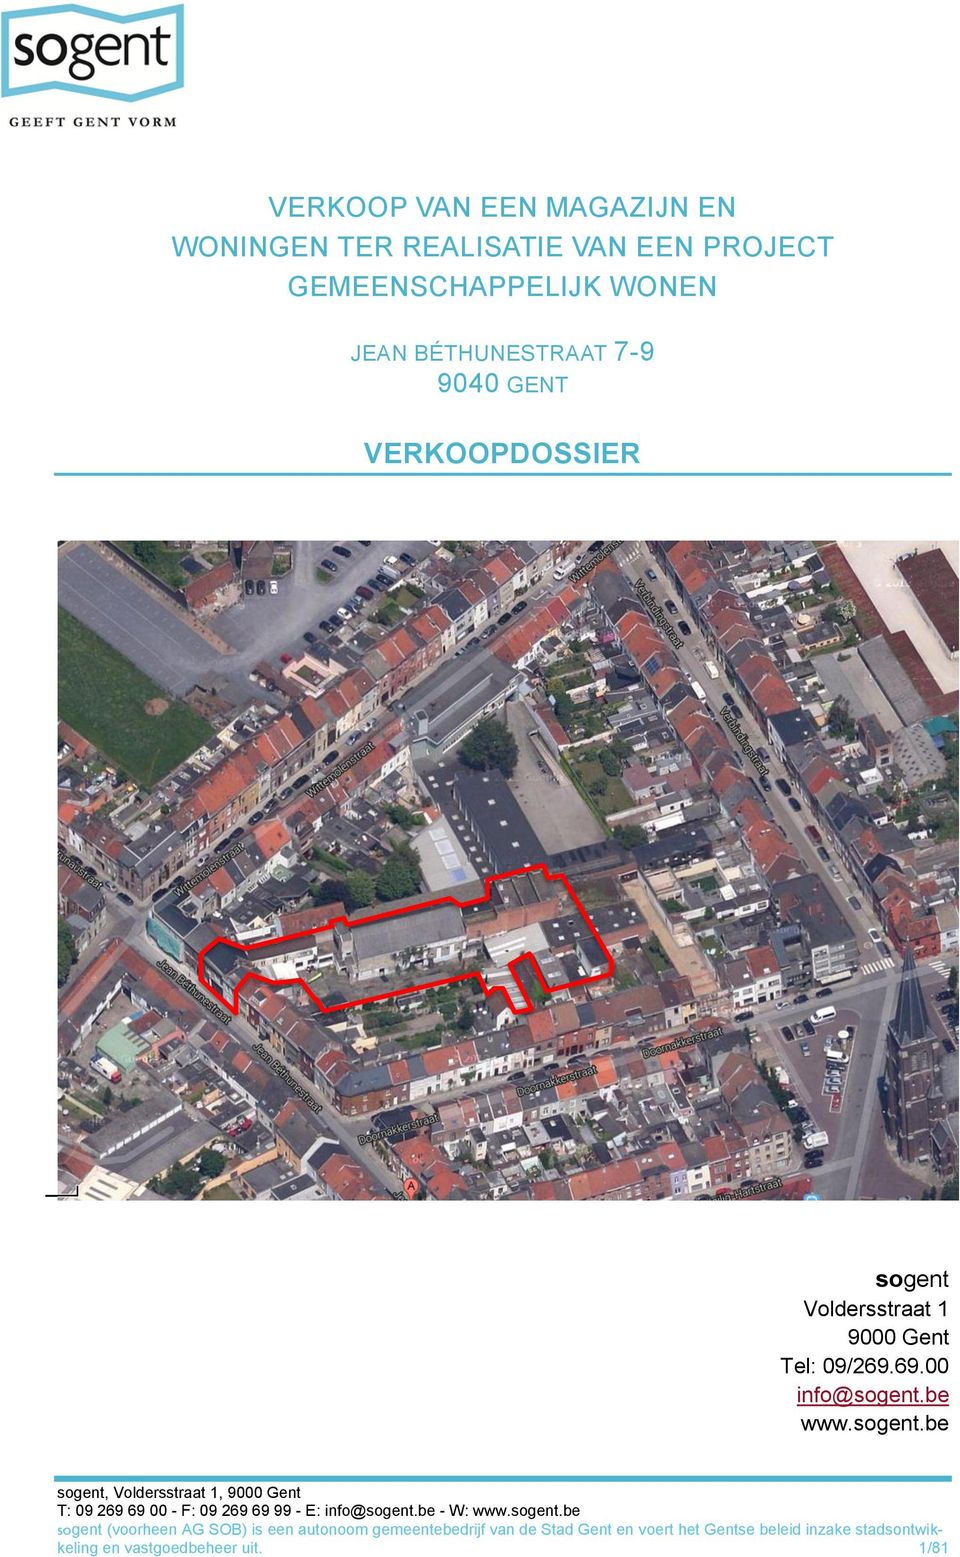 GENT VERKOOPDOSSIER sogent Voldersstraat 1 9000 Gent Tel: